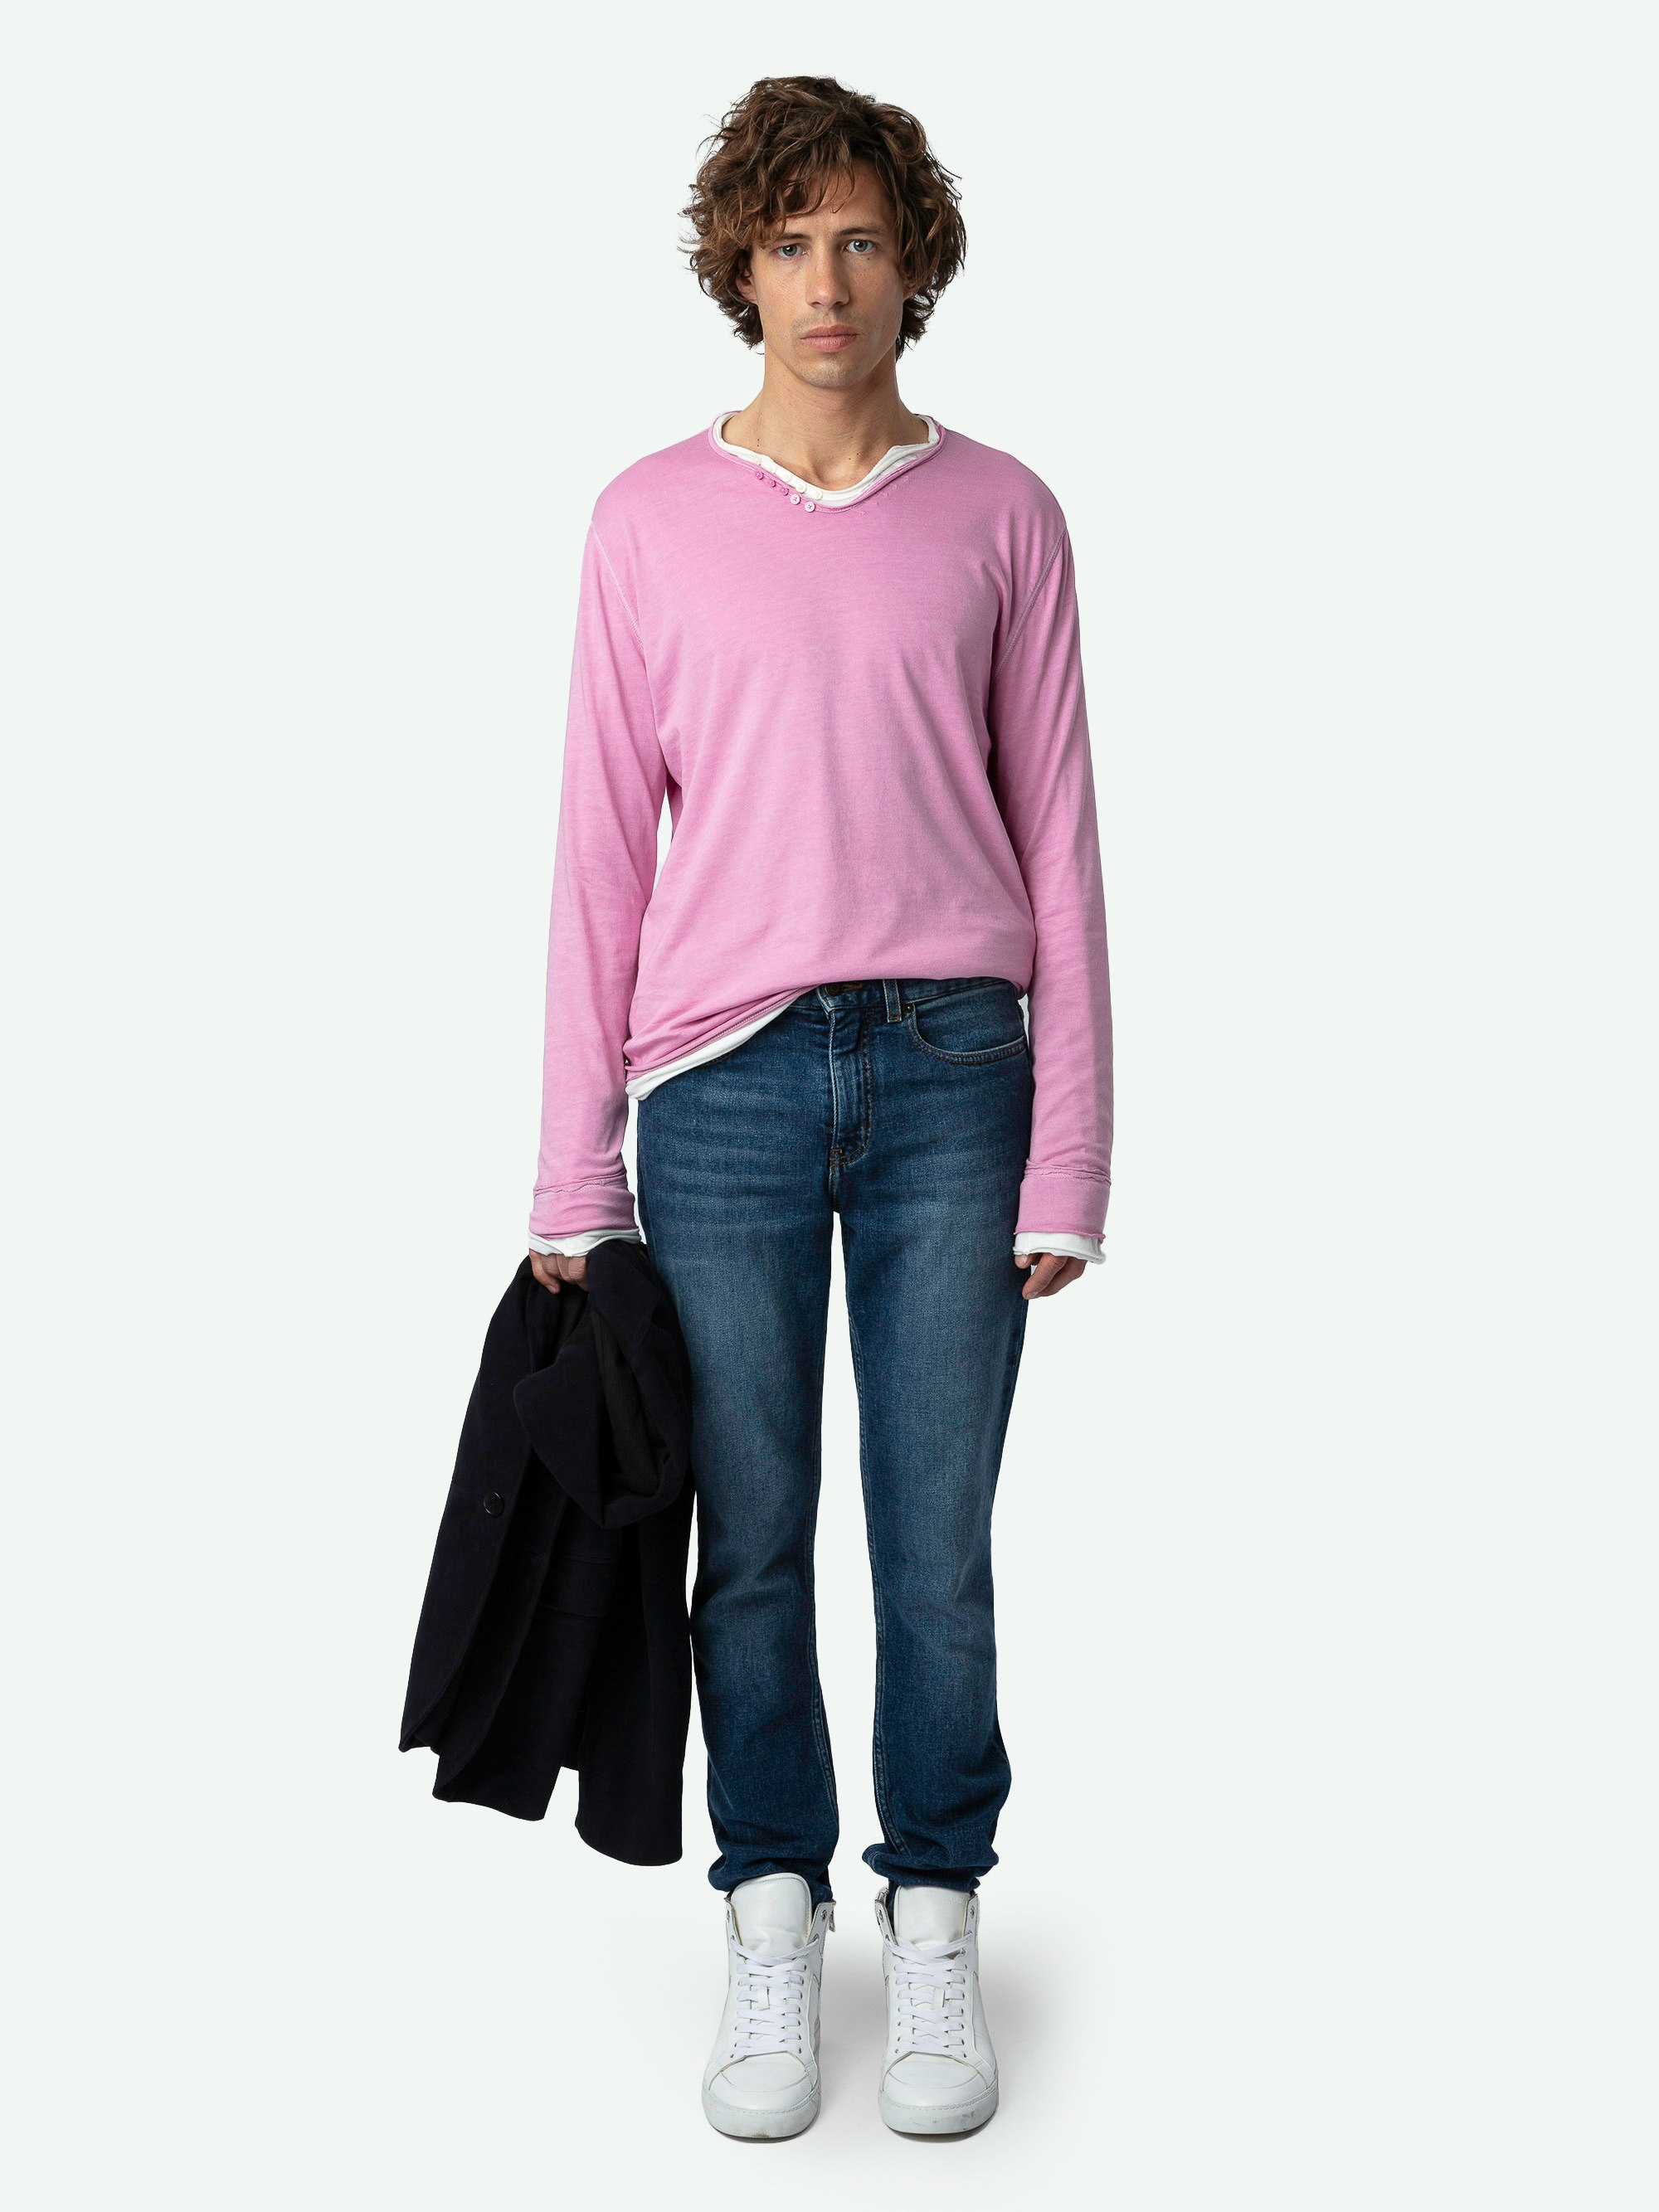 Henley-Shirt Monastir - Langärmeliges, rosafarbenes Henley-Shirt aus Bio-Baumwolle mit aufgedrucktem Greta-Gedicht auf dem Rücken.